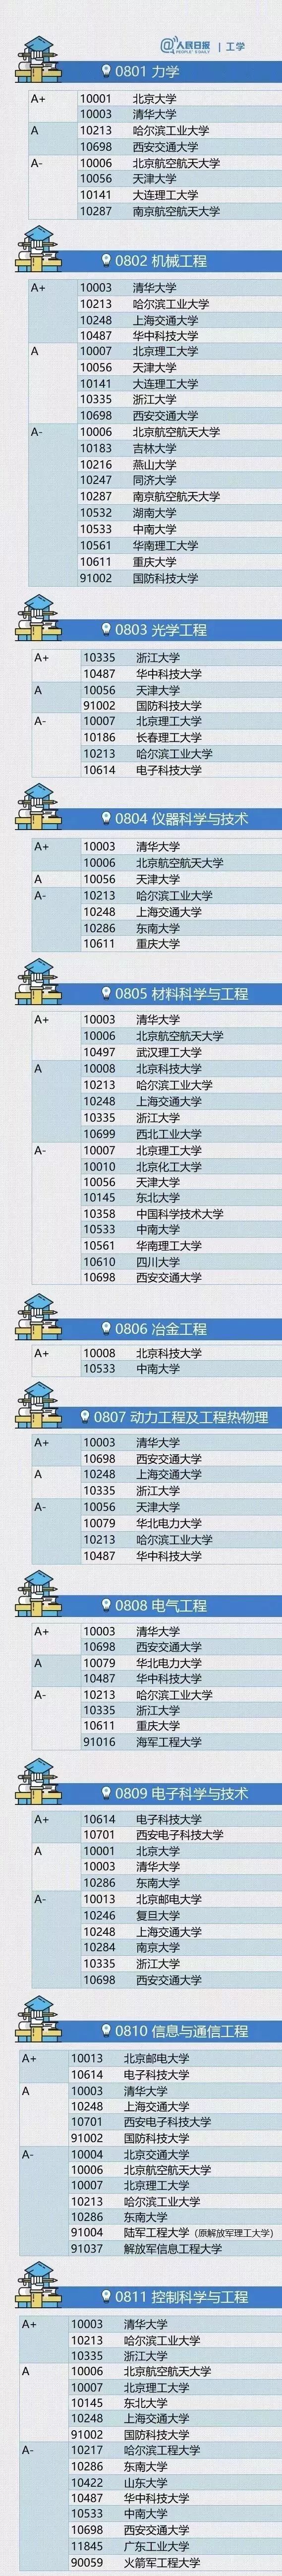 最全整理！中国大学最顶尖的学科名单！
                
                 